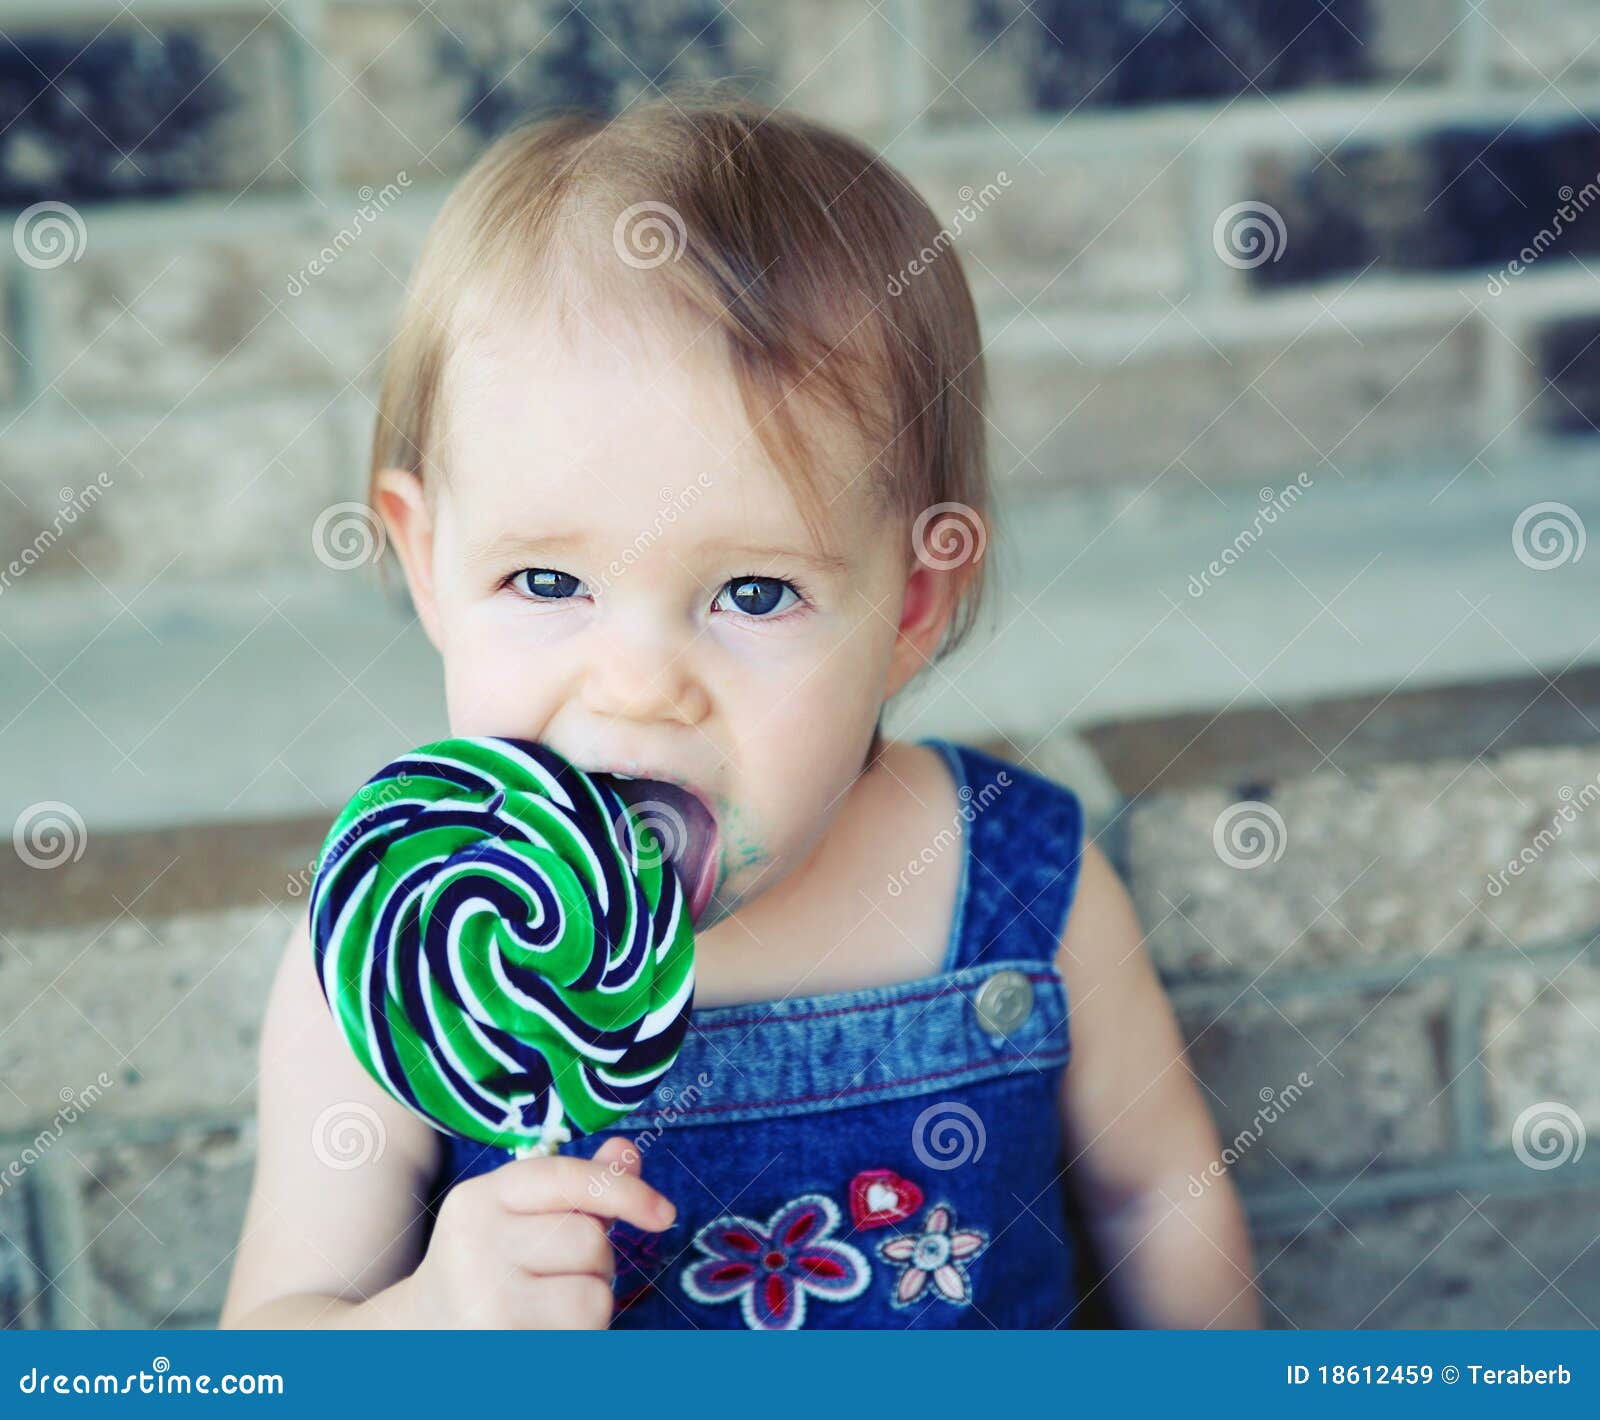 licking a lollipop